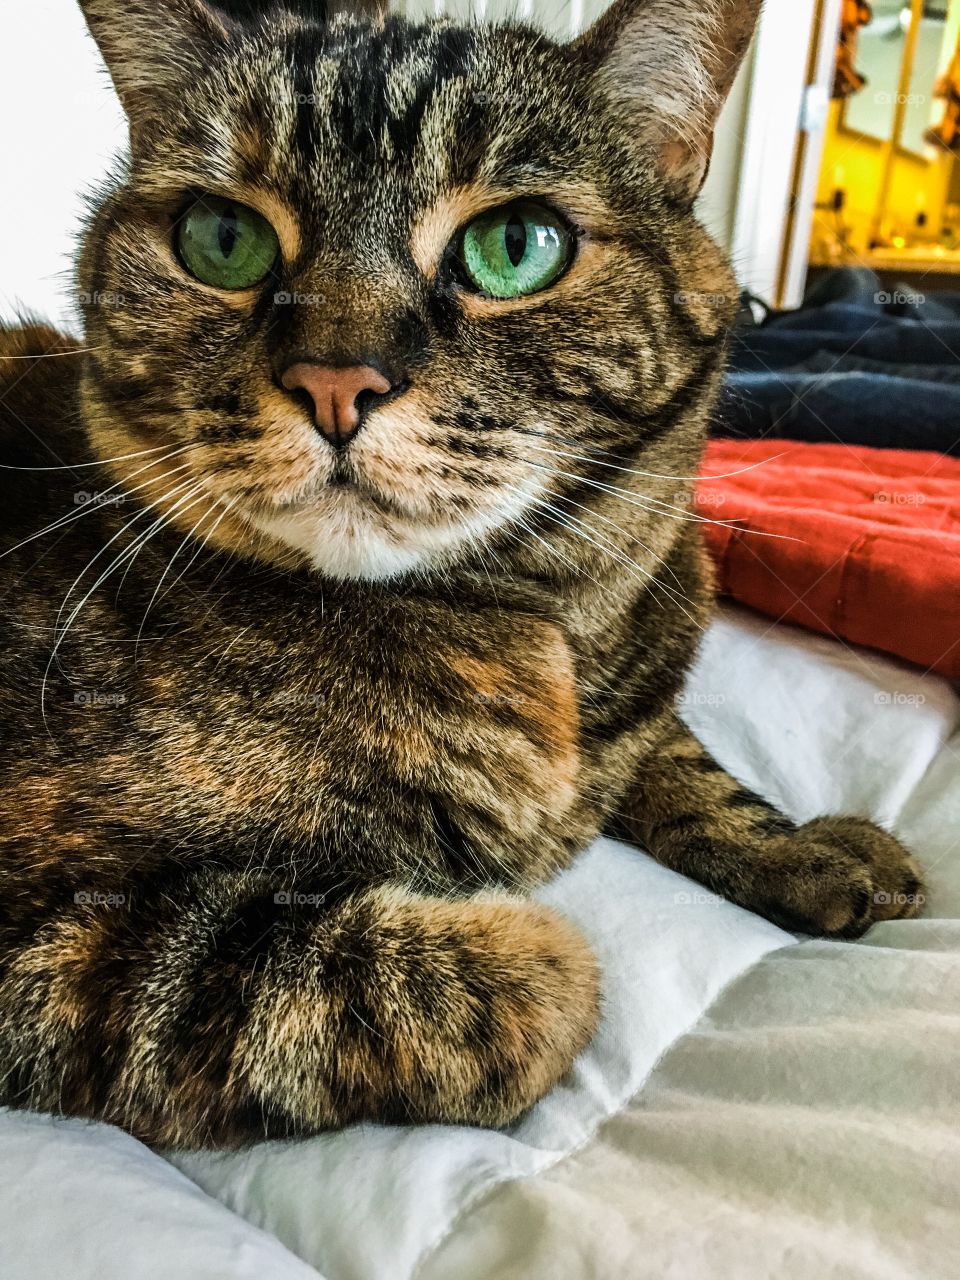 My Green Eyed Cat, Gypsy. 